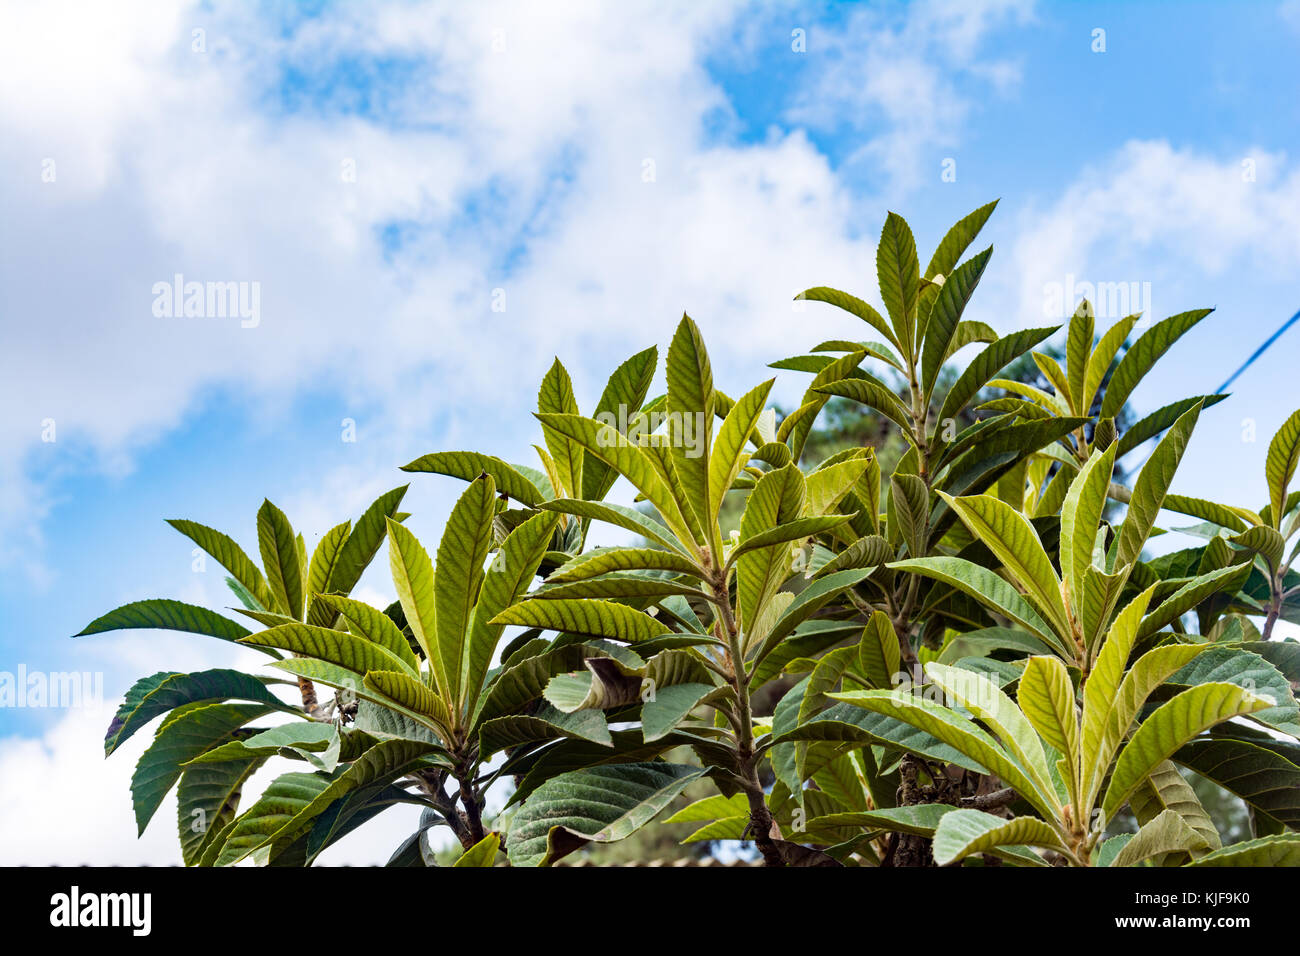 Medlars tree against the sky Stock Photo